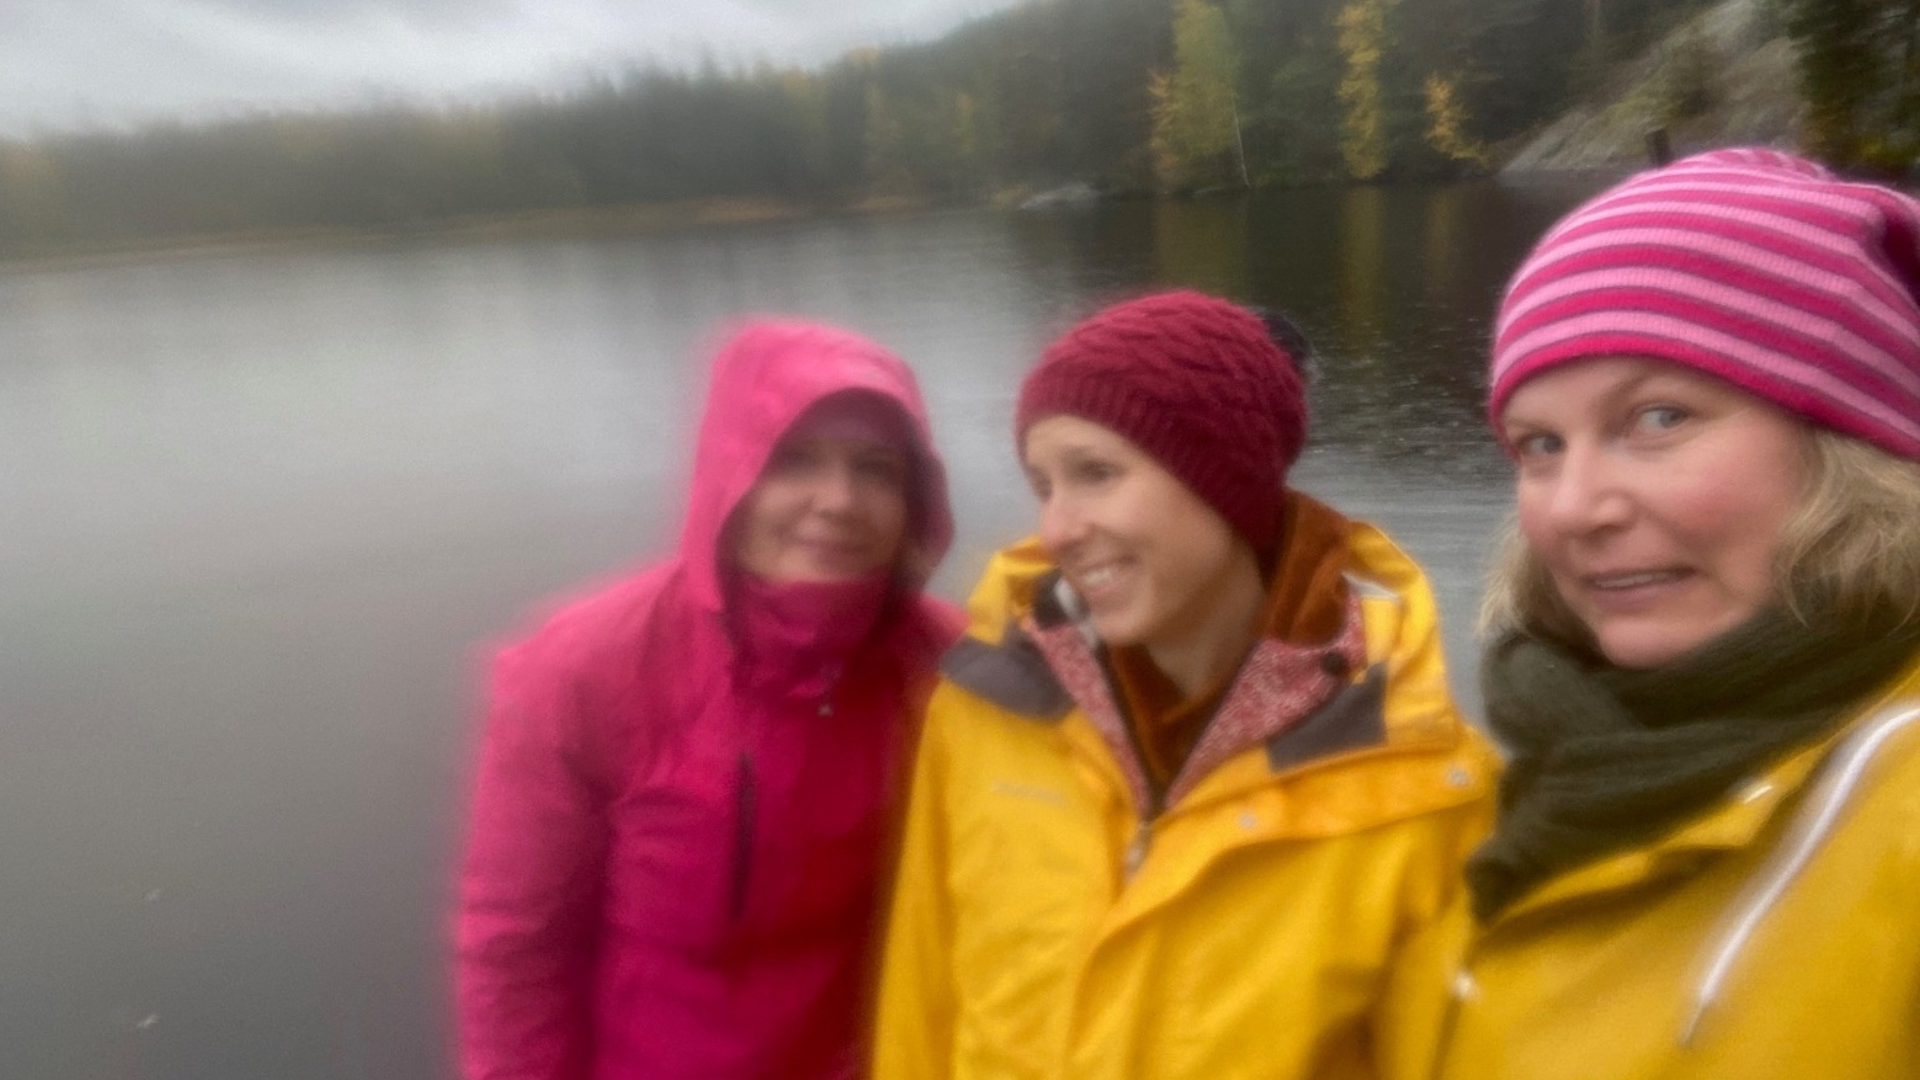 Karikan kolme työntekijää poseraa kameralle sateisen järven edessä sadetakit päällä.